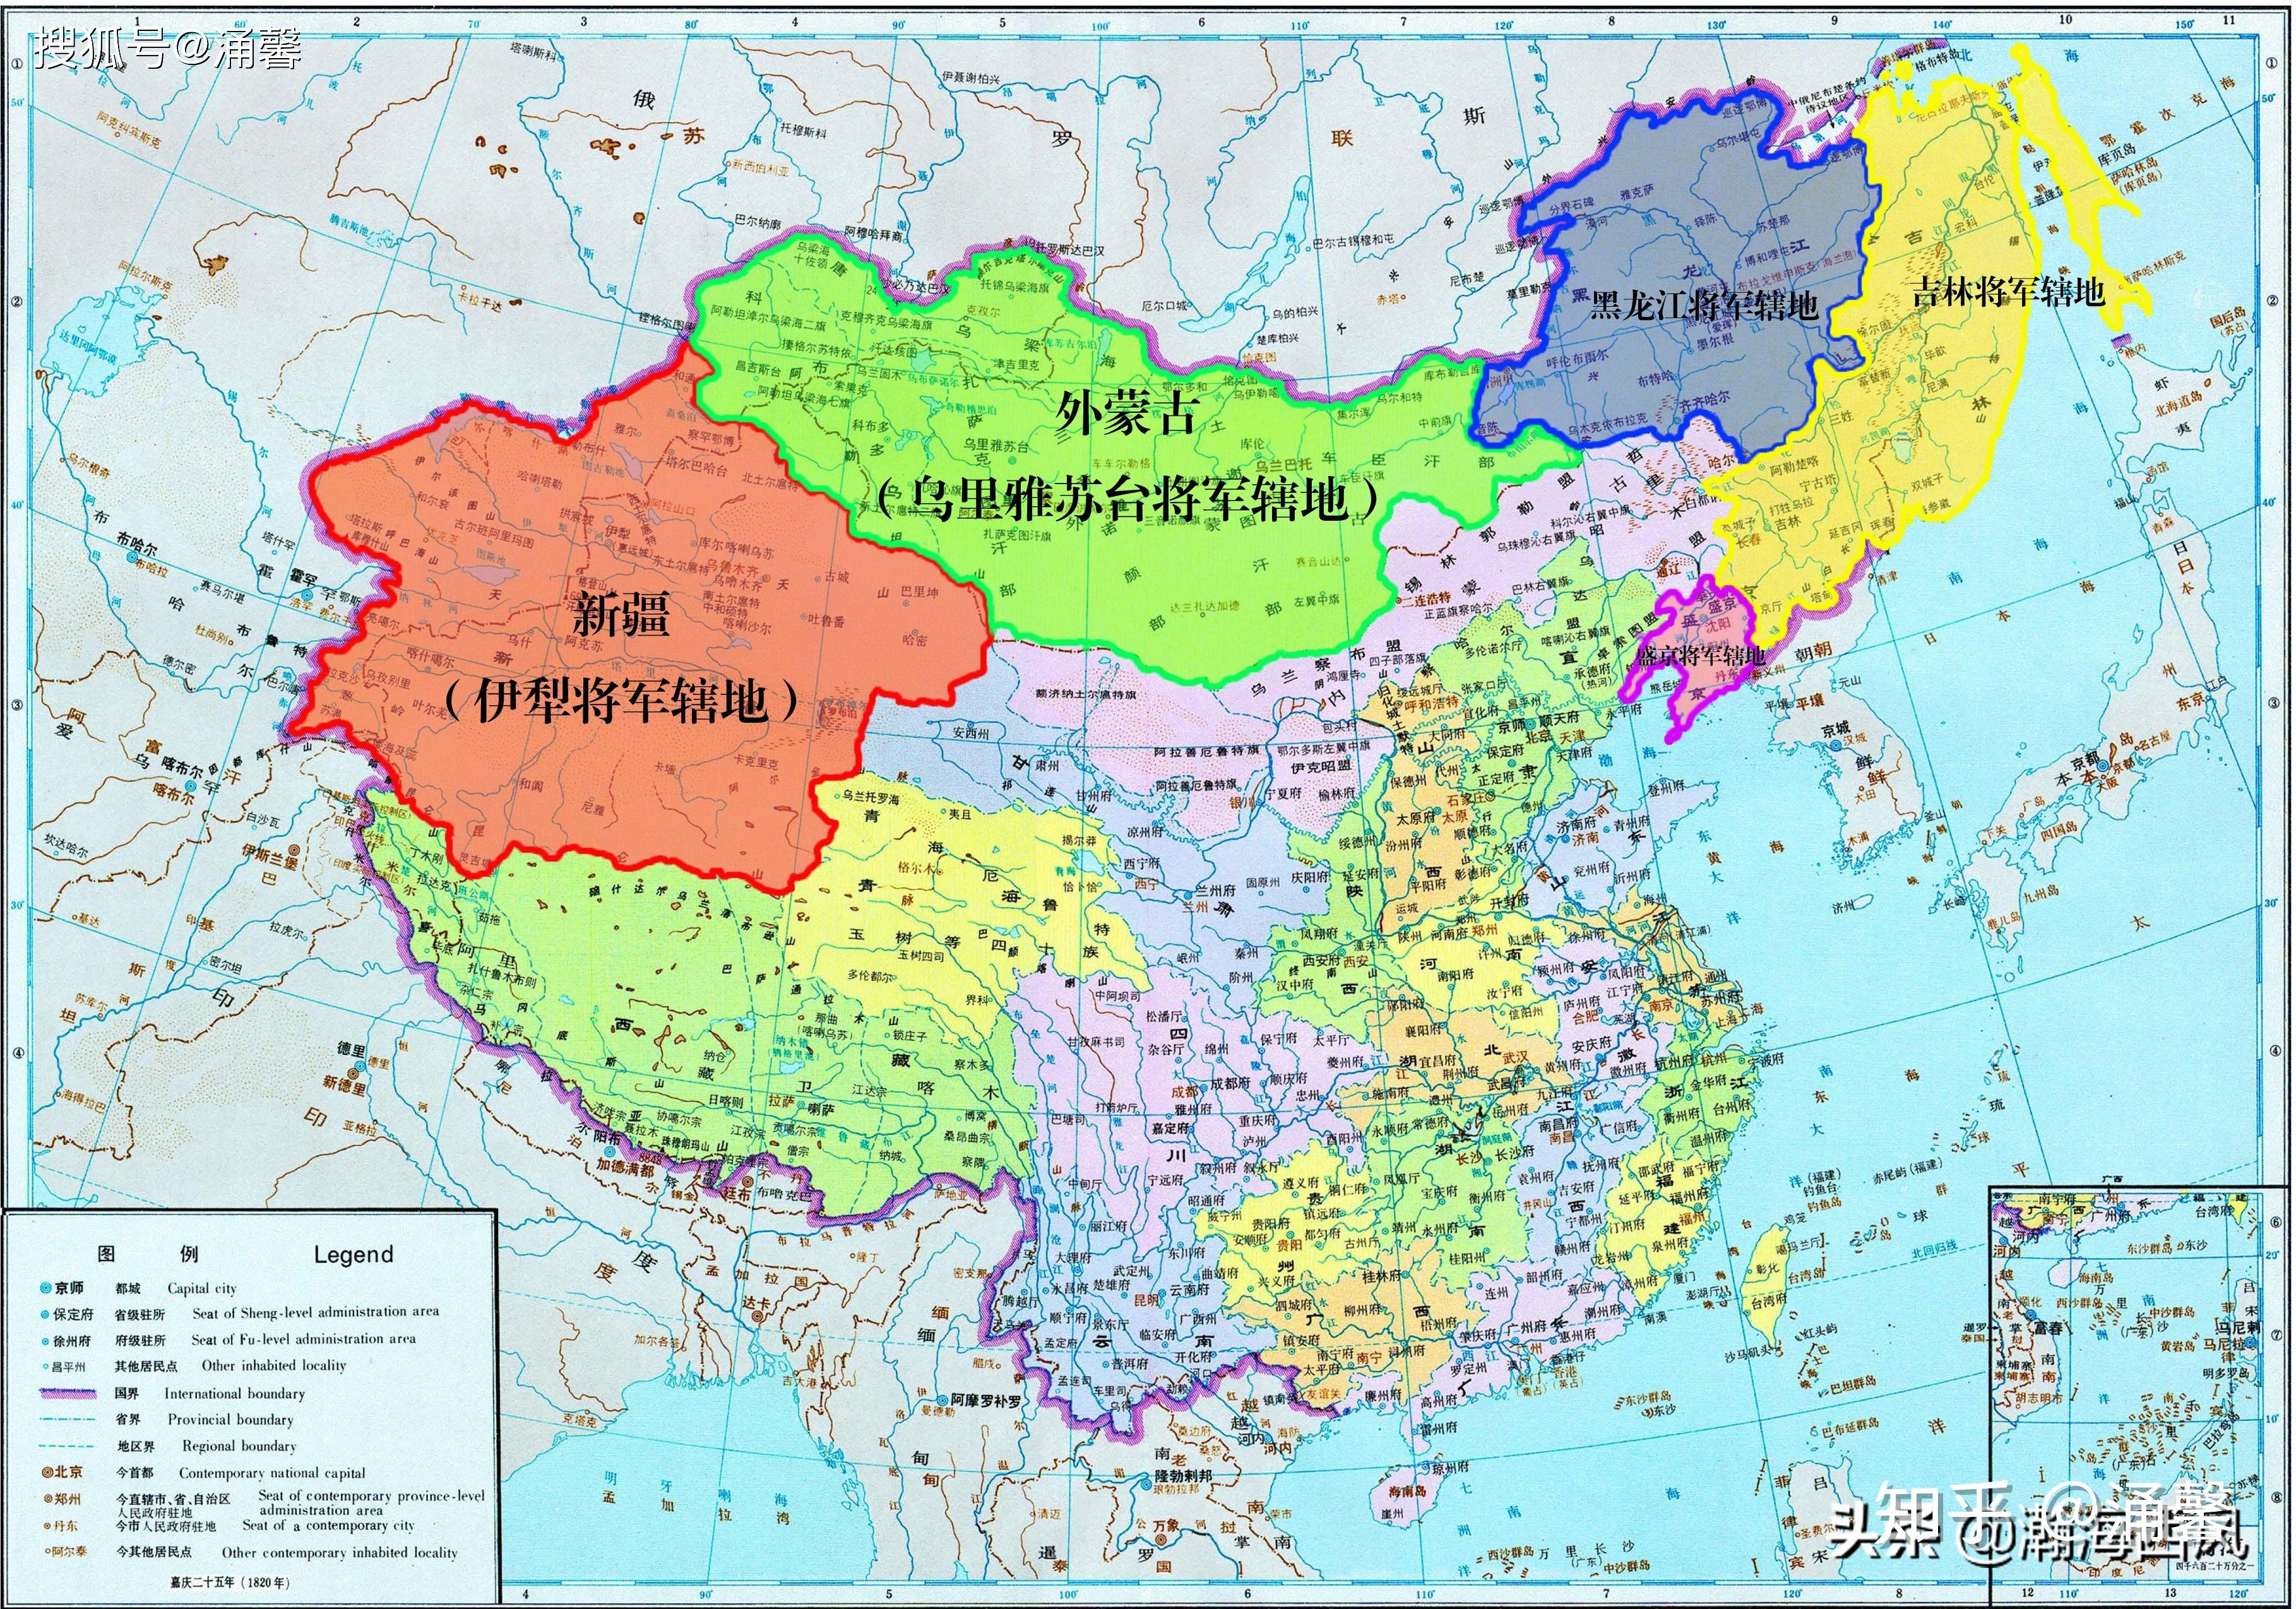 中国和外蒙古边境是怎么划分的。-内蒙和外蒙的边境是依据什么划分的